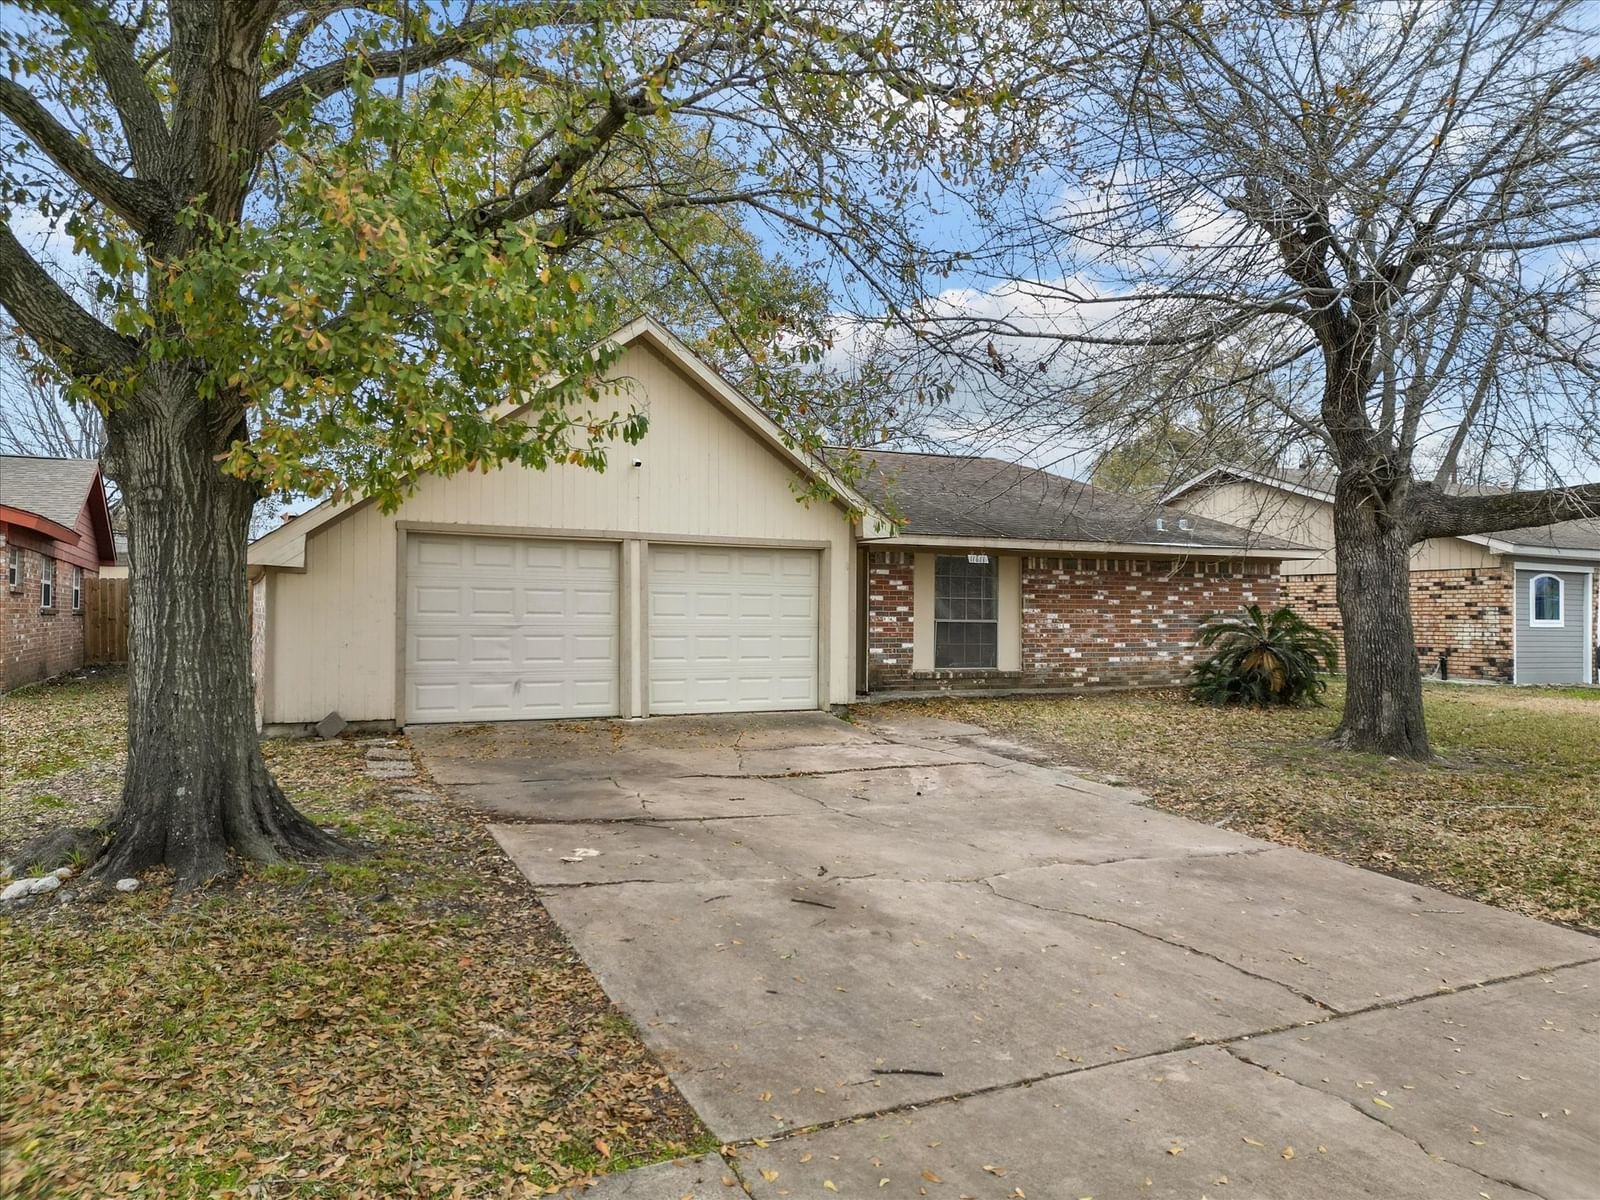 Real estate property located at 11611 Sagedowne, Harris, Sagemont, Houston, TX, US